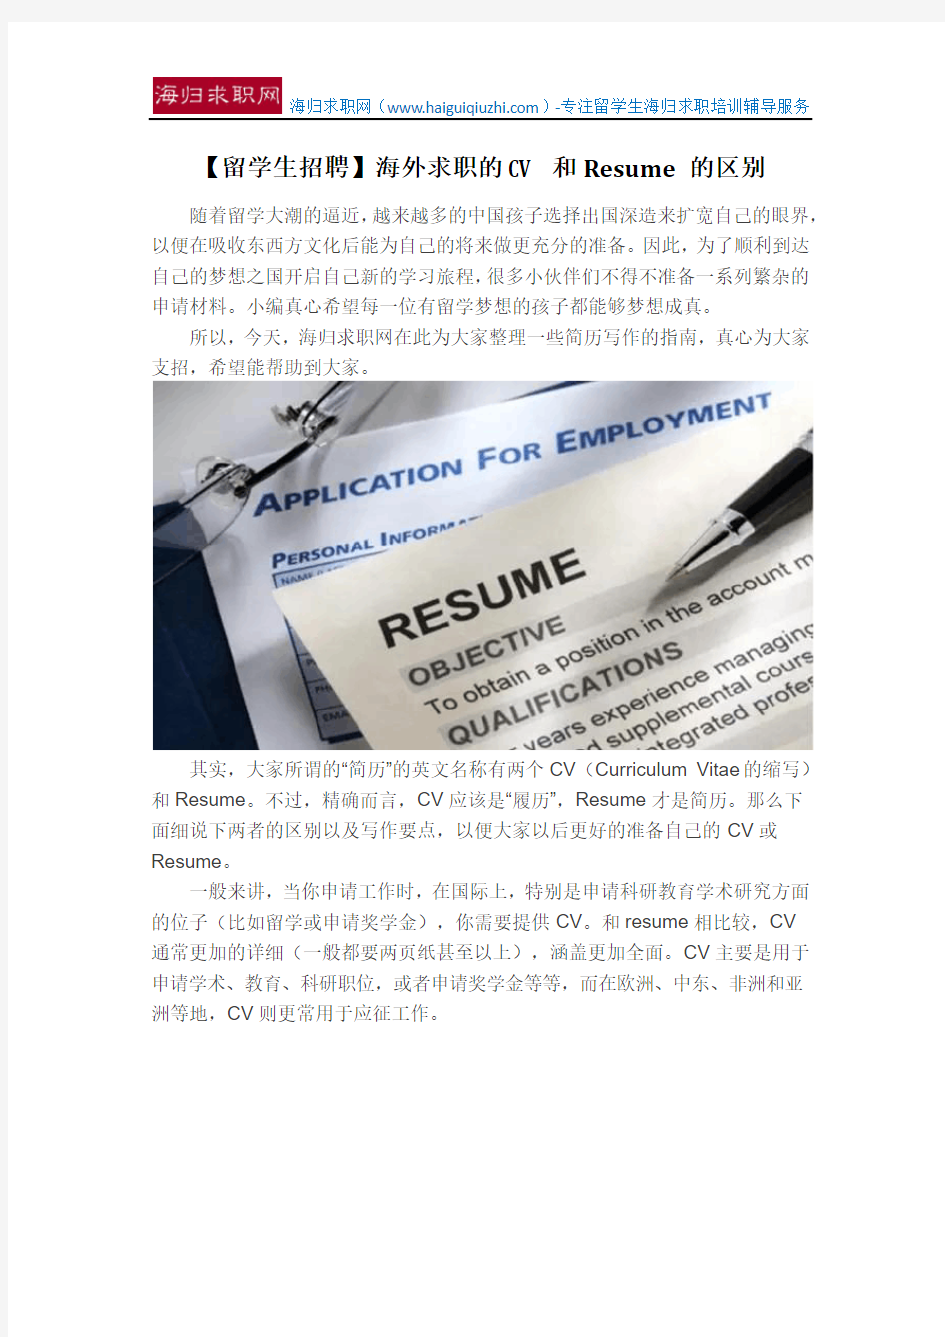 【留学生招聘】海外求职的CV 和Resume 的区别